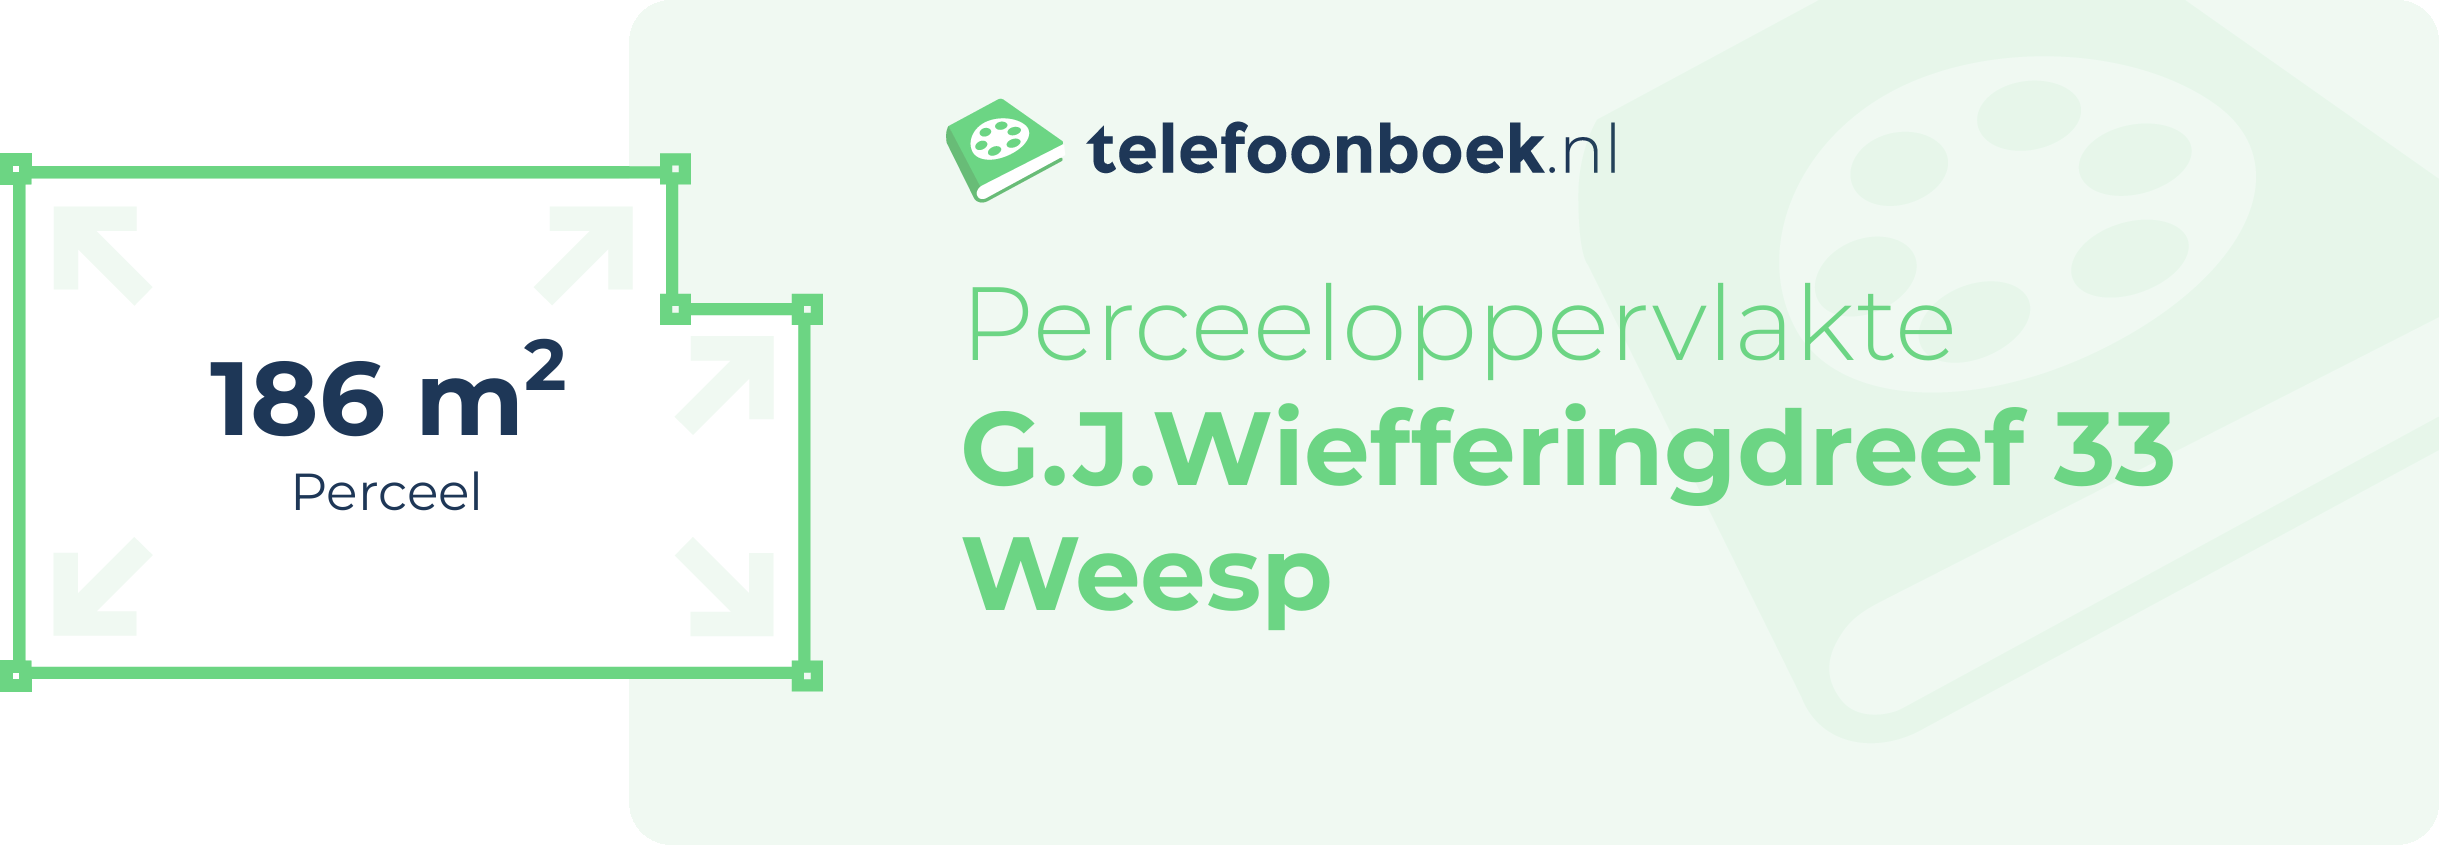 Perceeloppervlakte G.J.Wiefferingdreef 33 Weesp